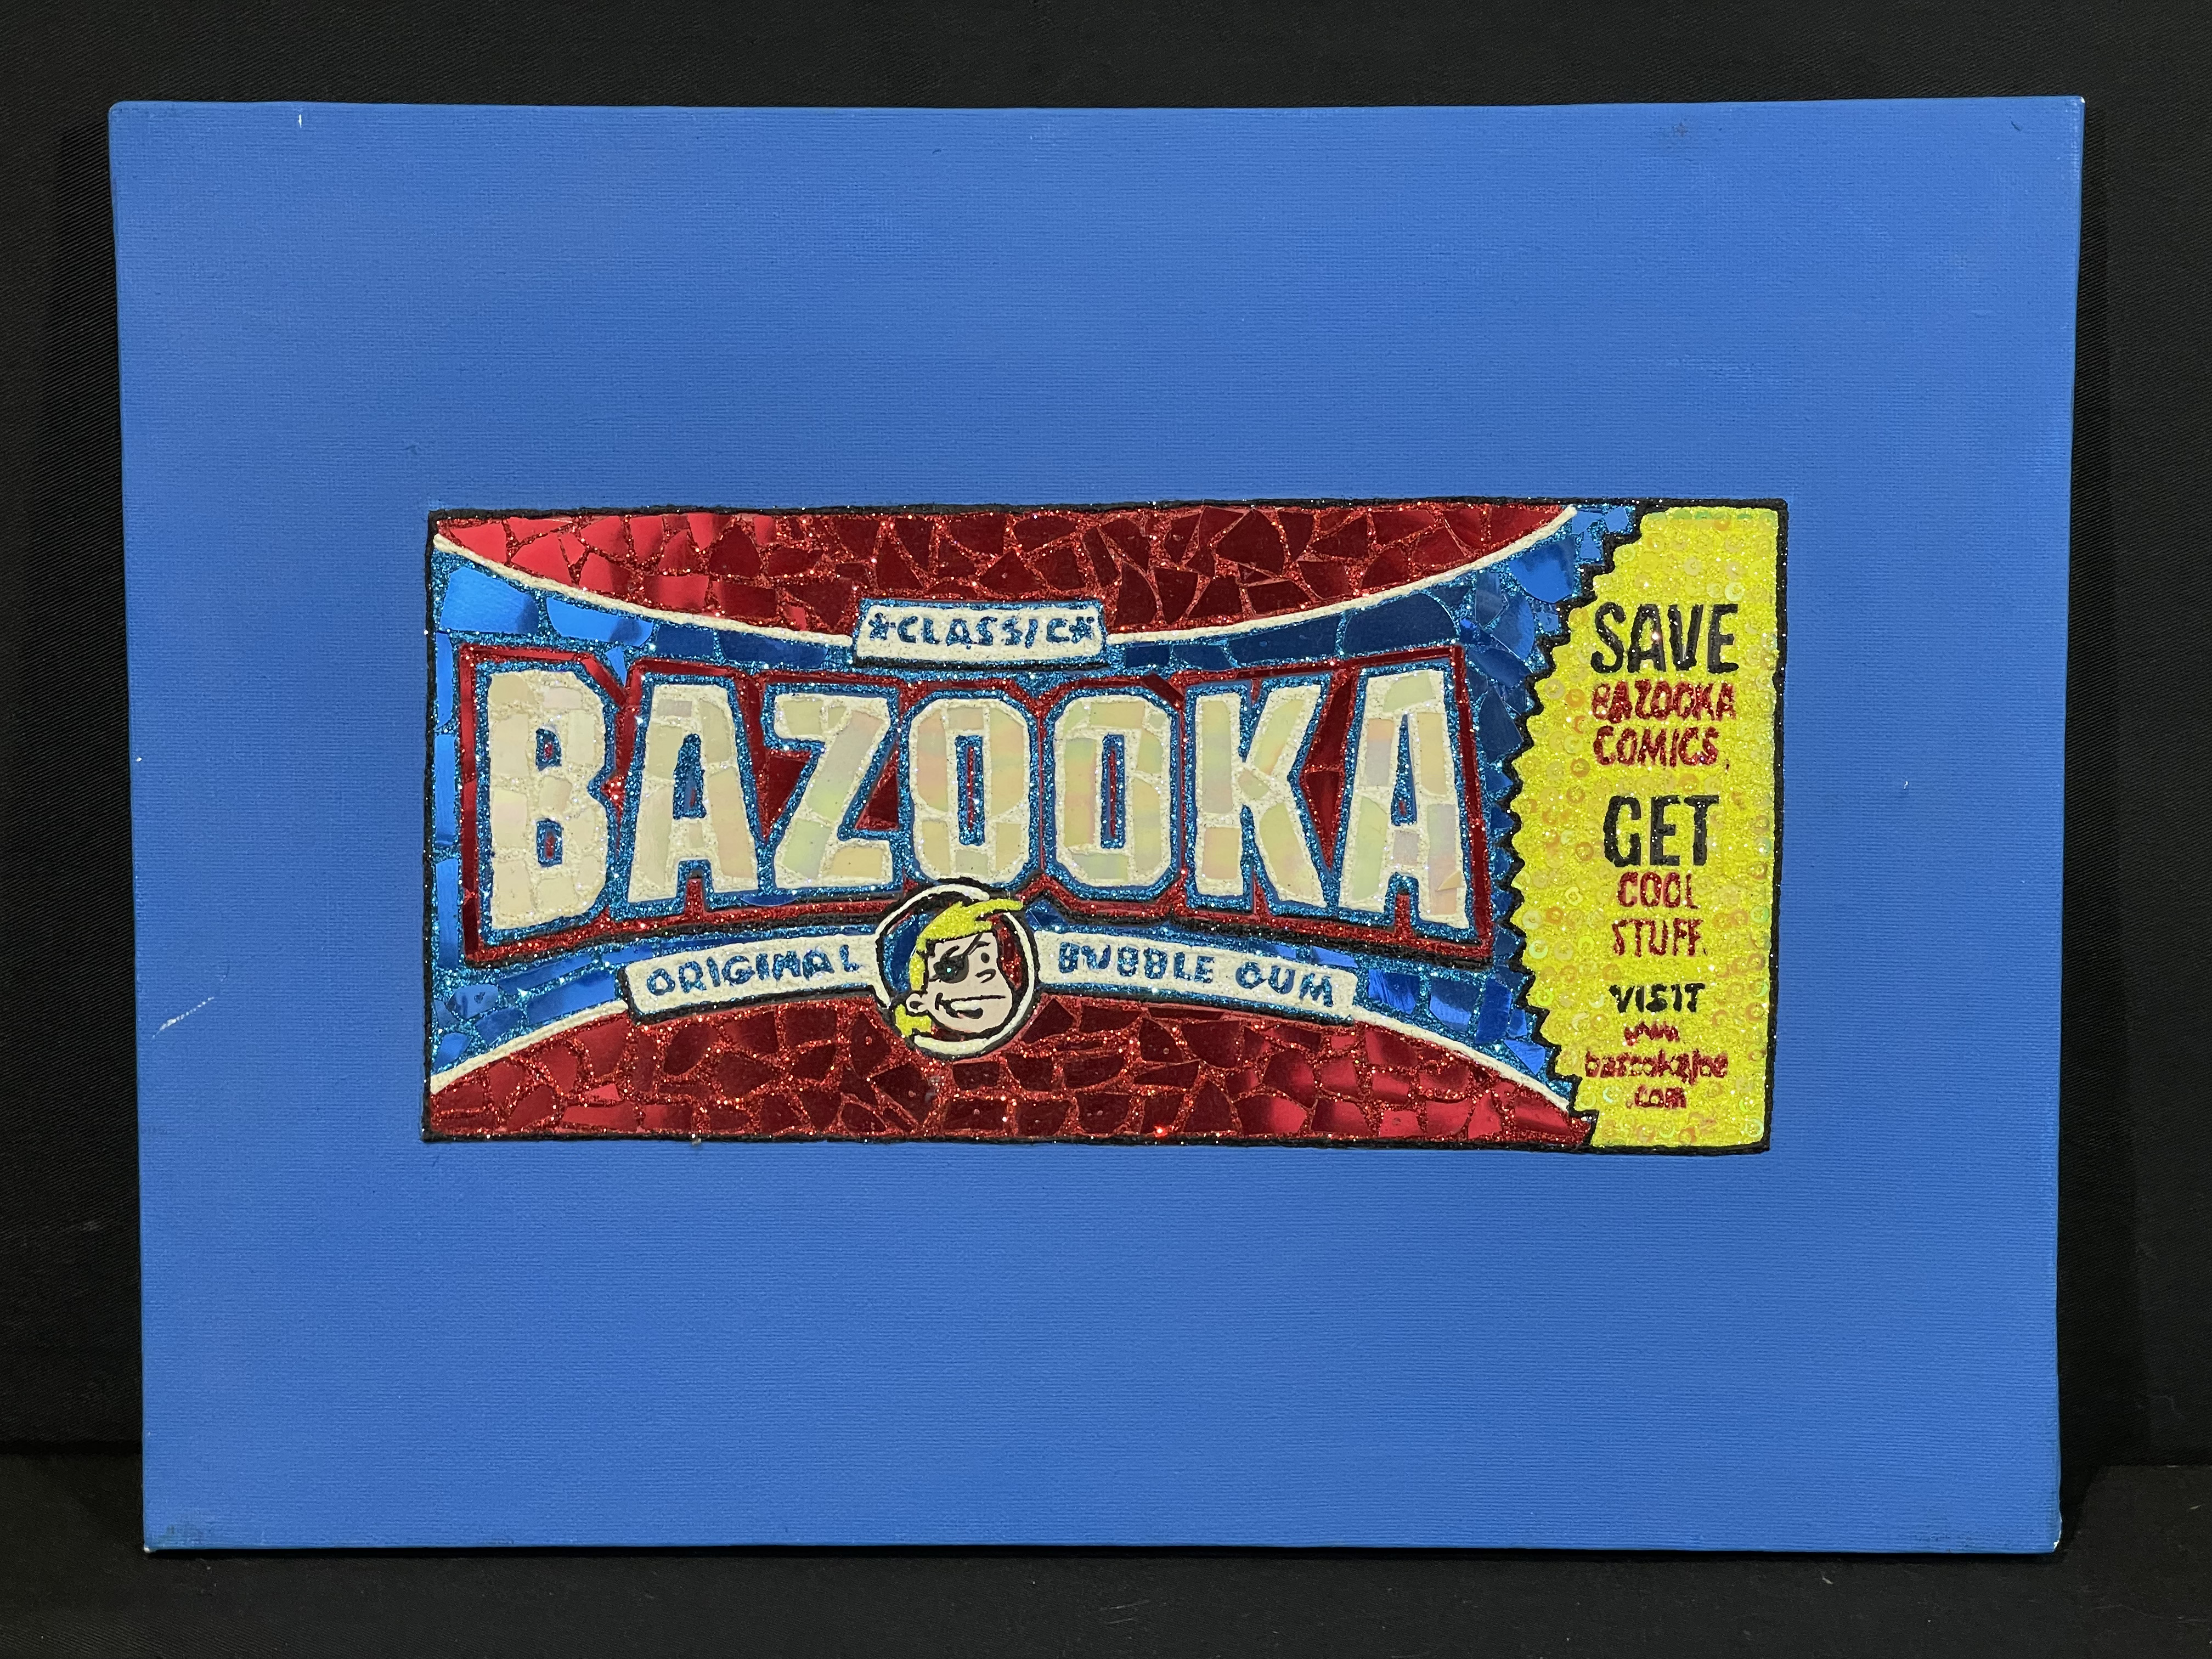 Joe Bazooka mixed media on canvas by Marty Thornton.